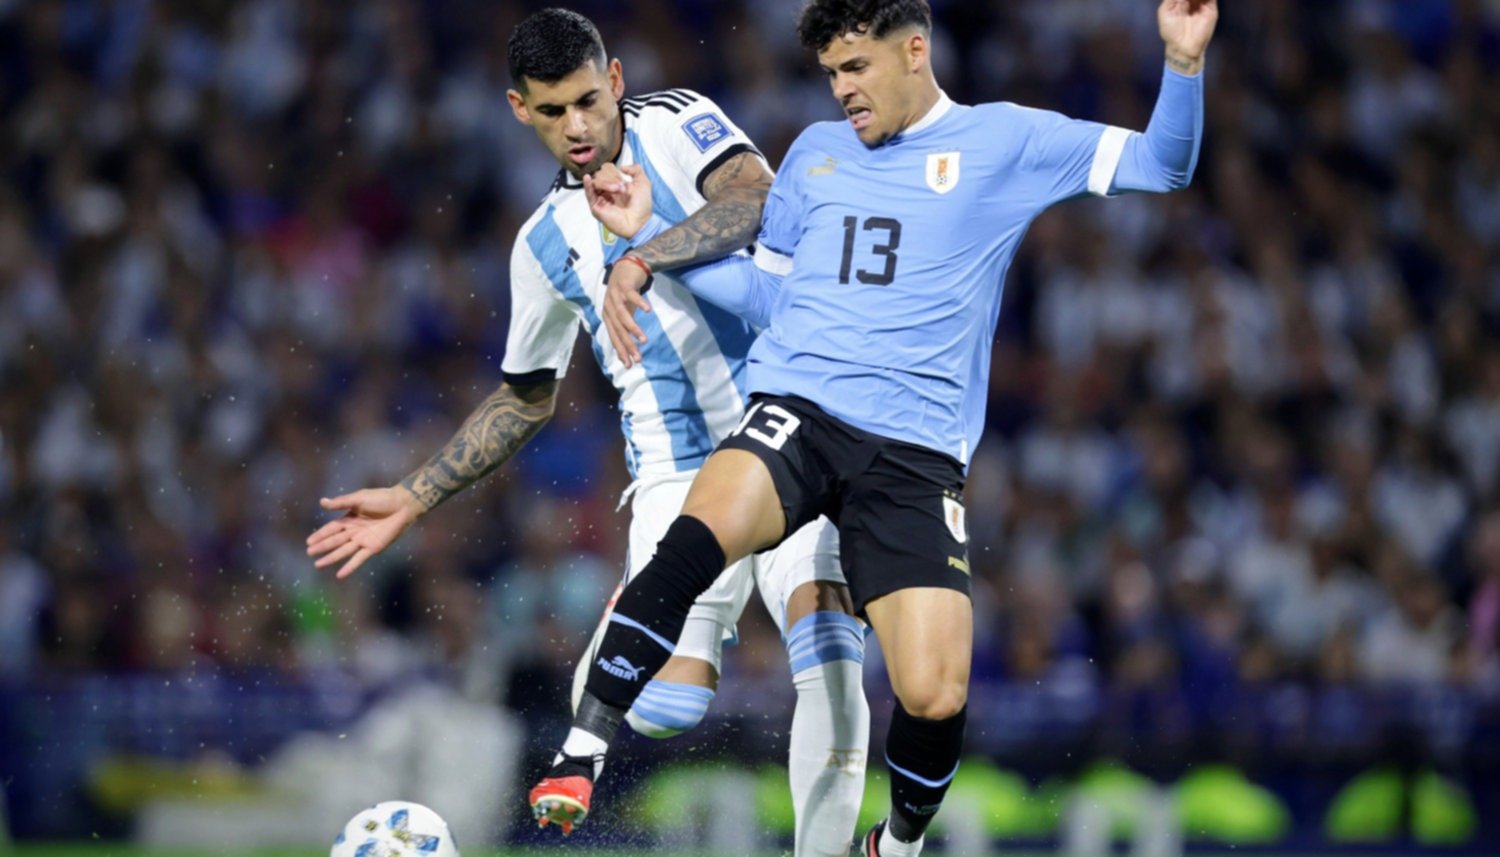 VIDEO) Los goles de Araújo y Darwin Núñez para Uruguay contra la Selección  Argentina - TyC Sports